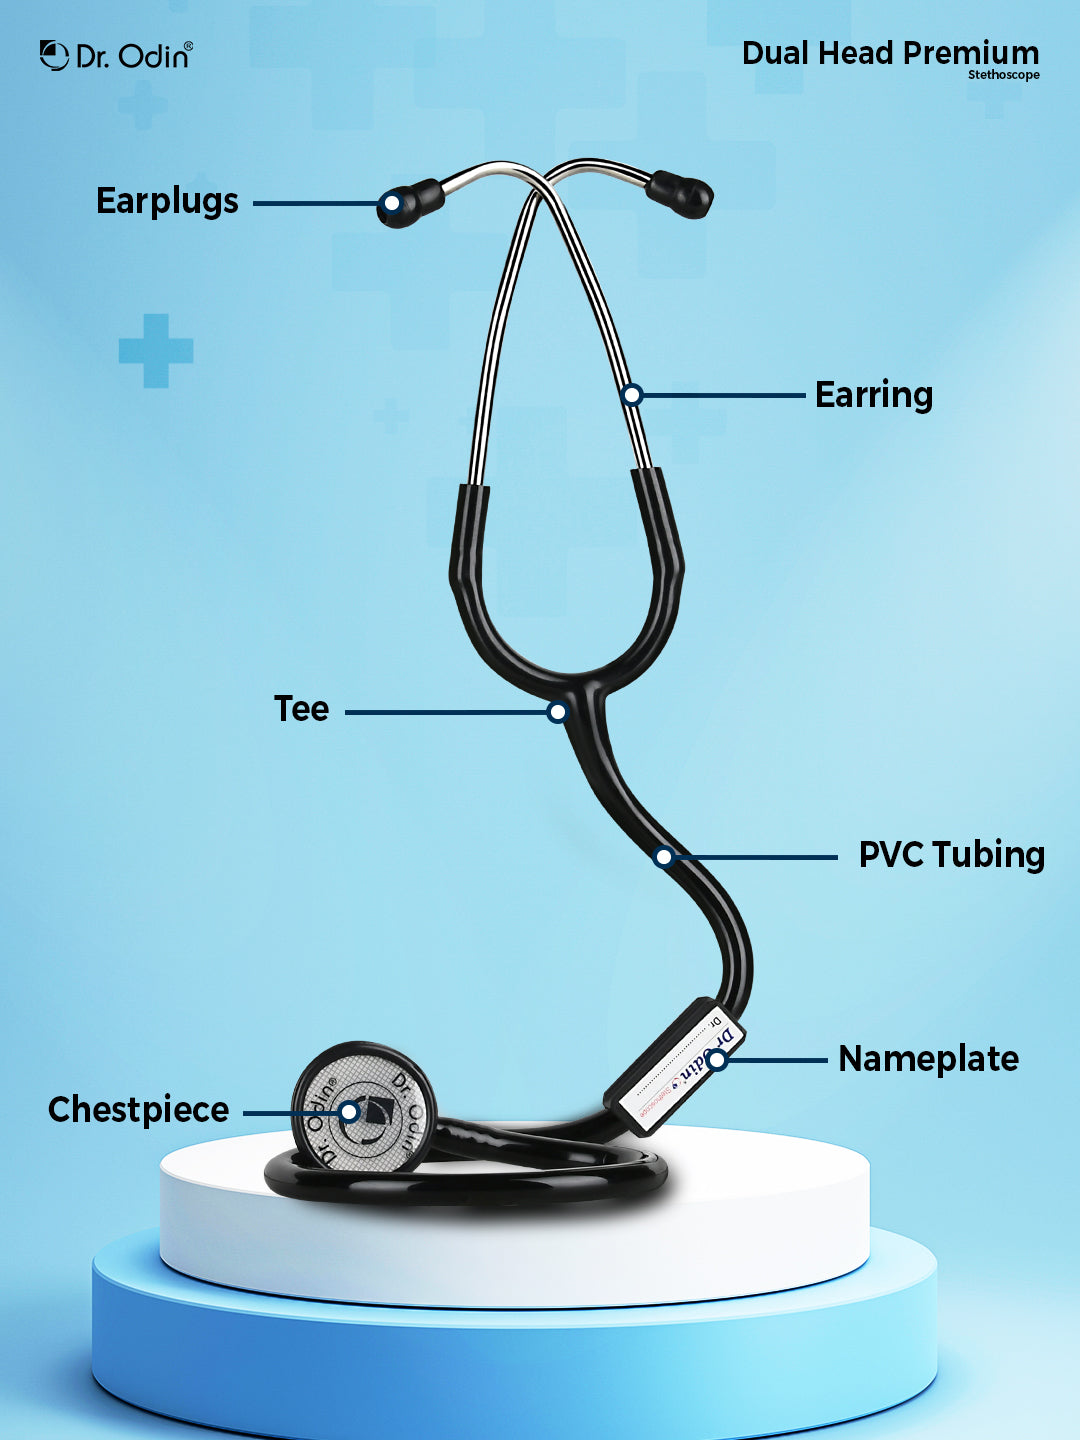 Stethoscope Dual head Premium